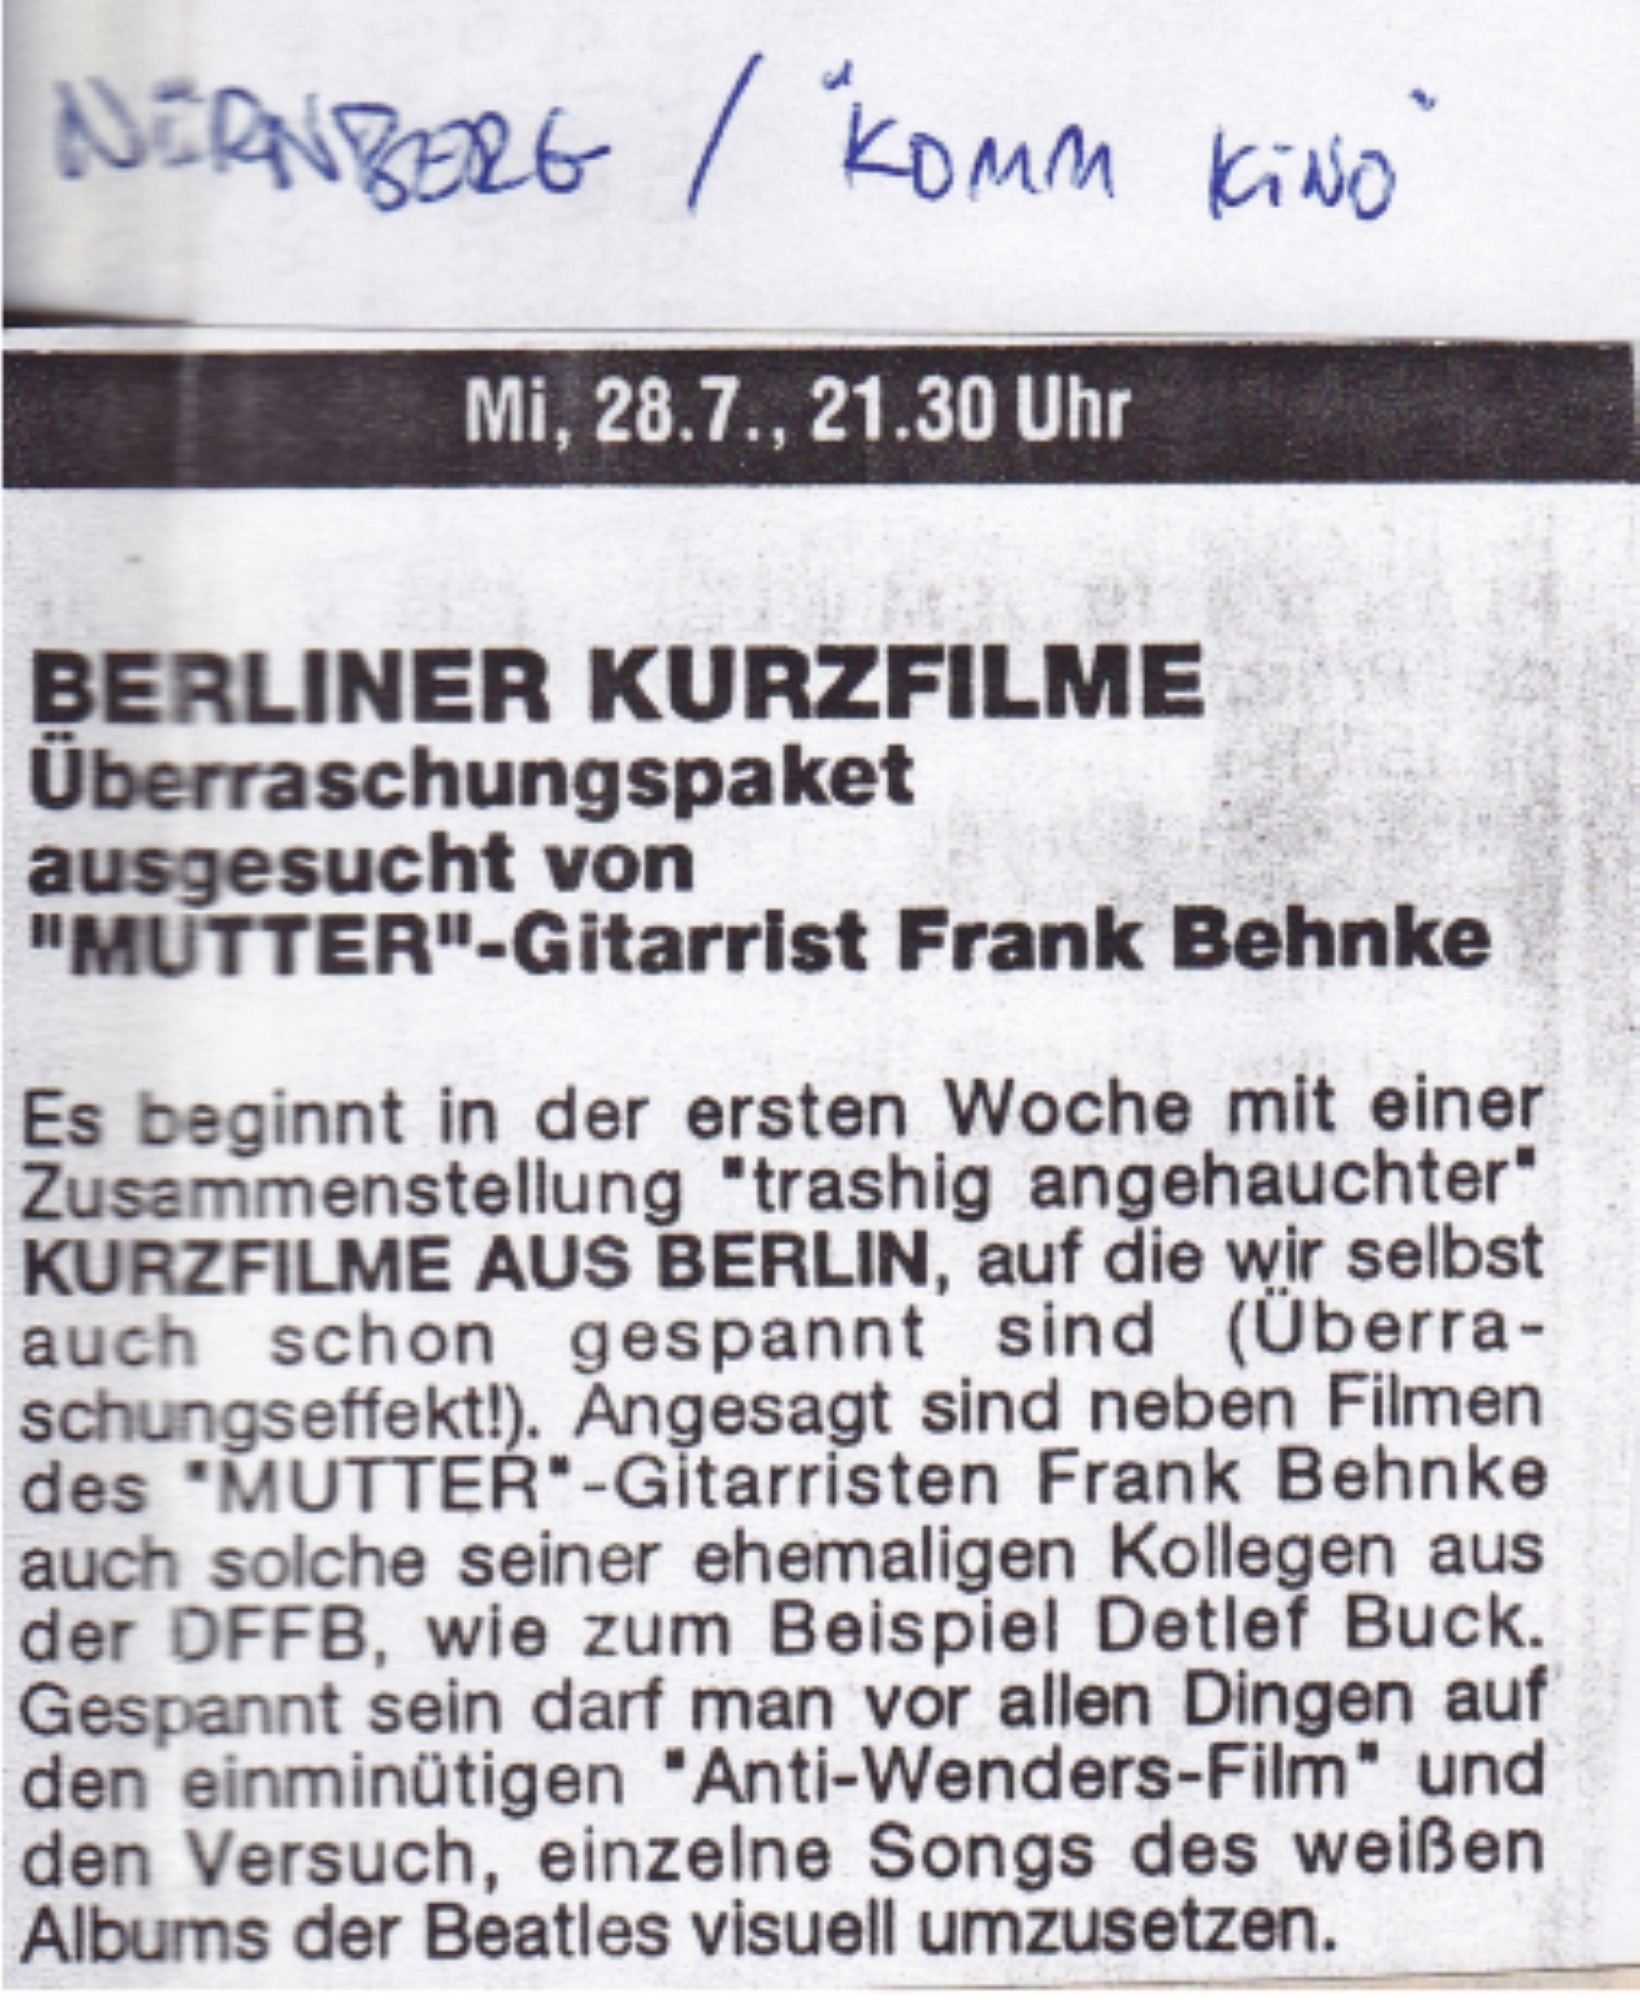 90-Komm-Kino-Nürnberg-28.7.93